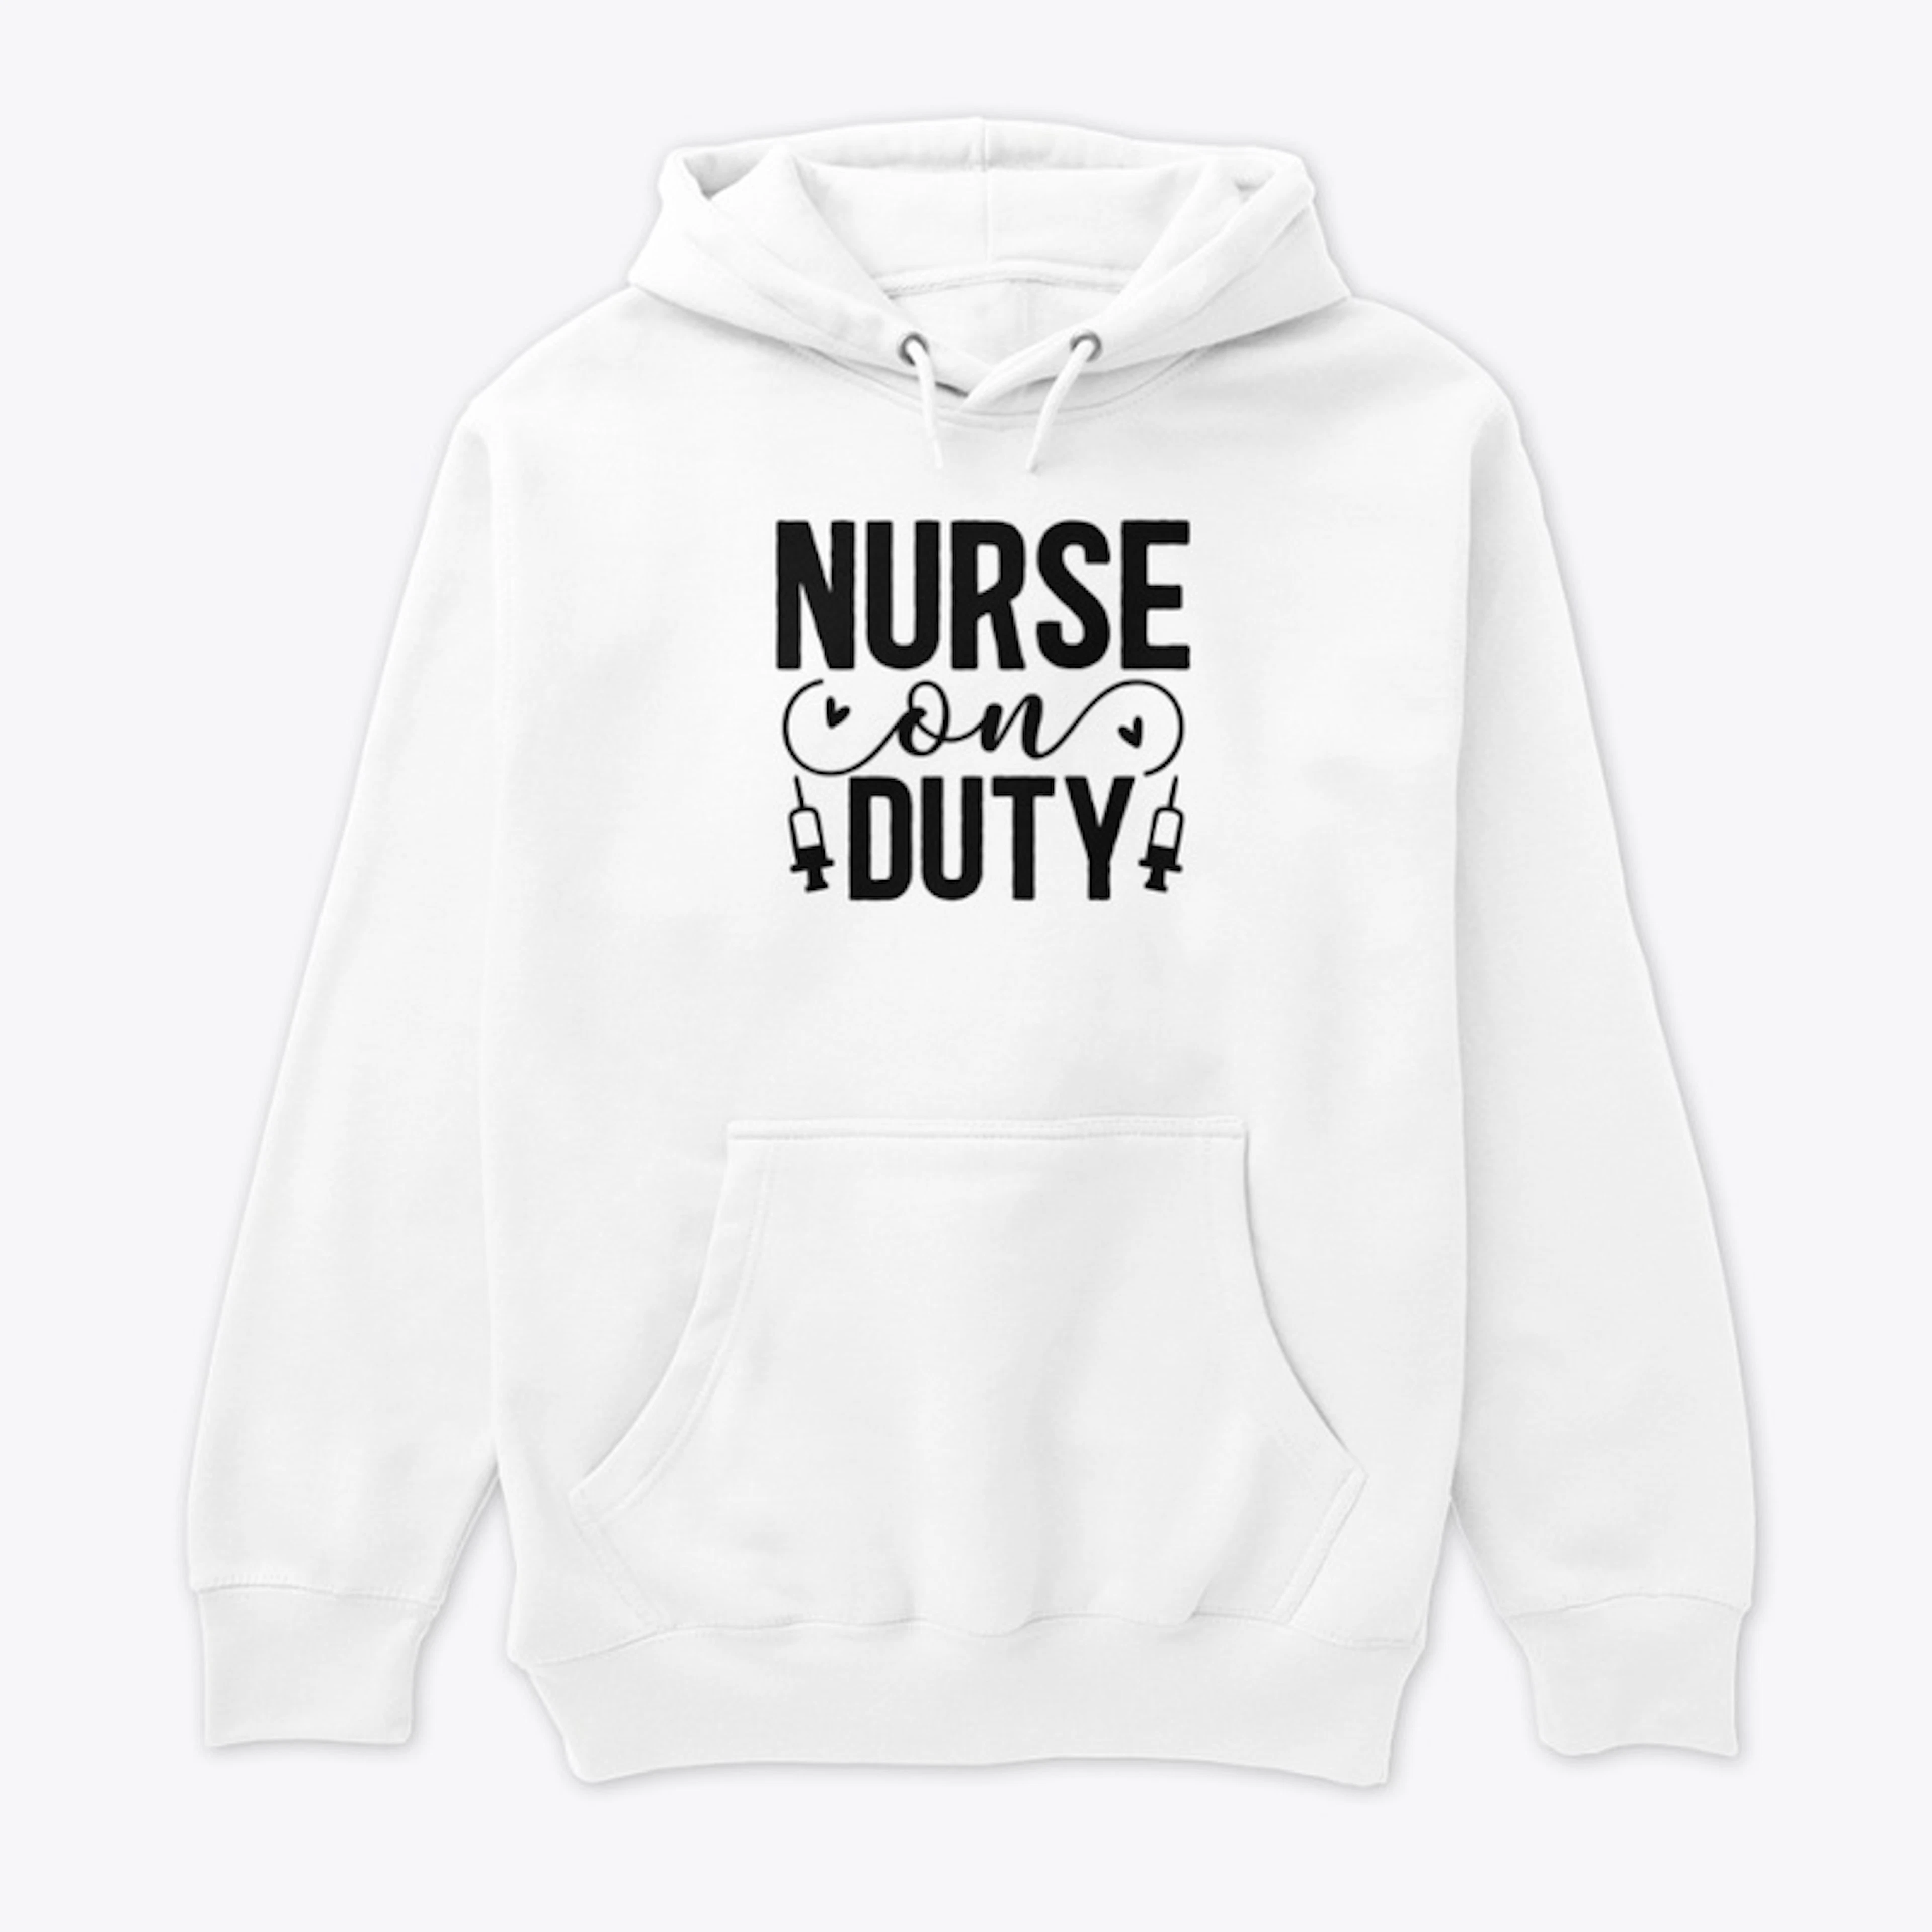 Nurse on Duty